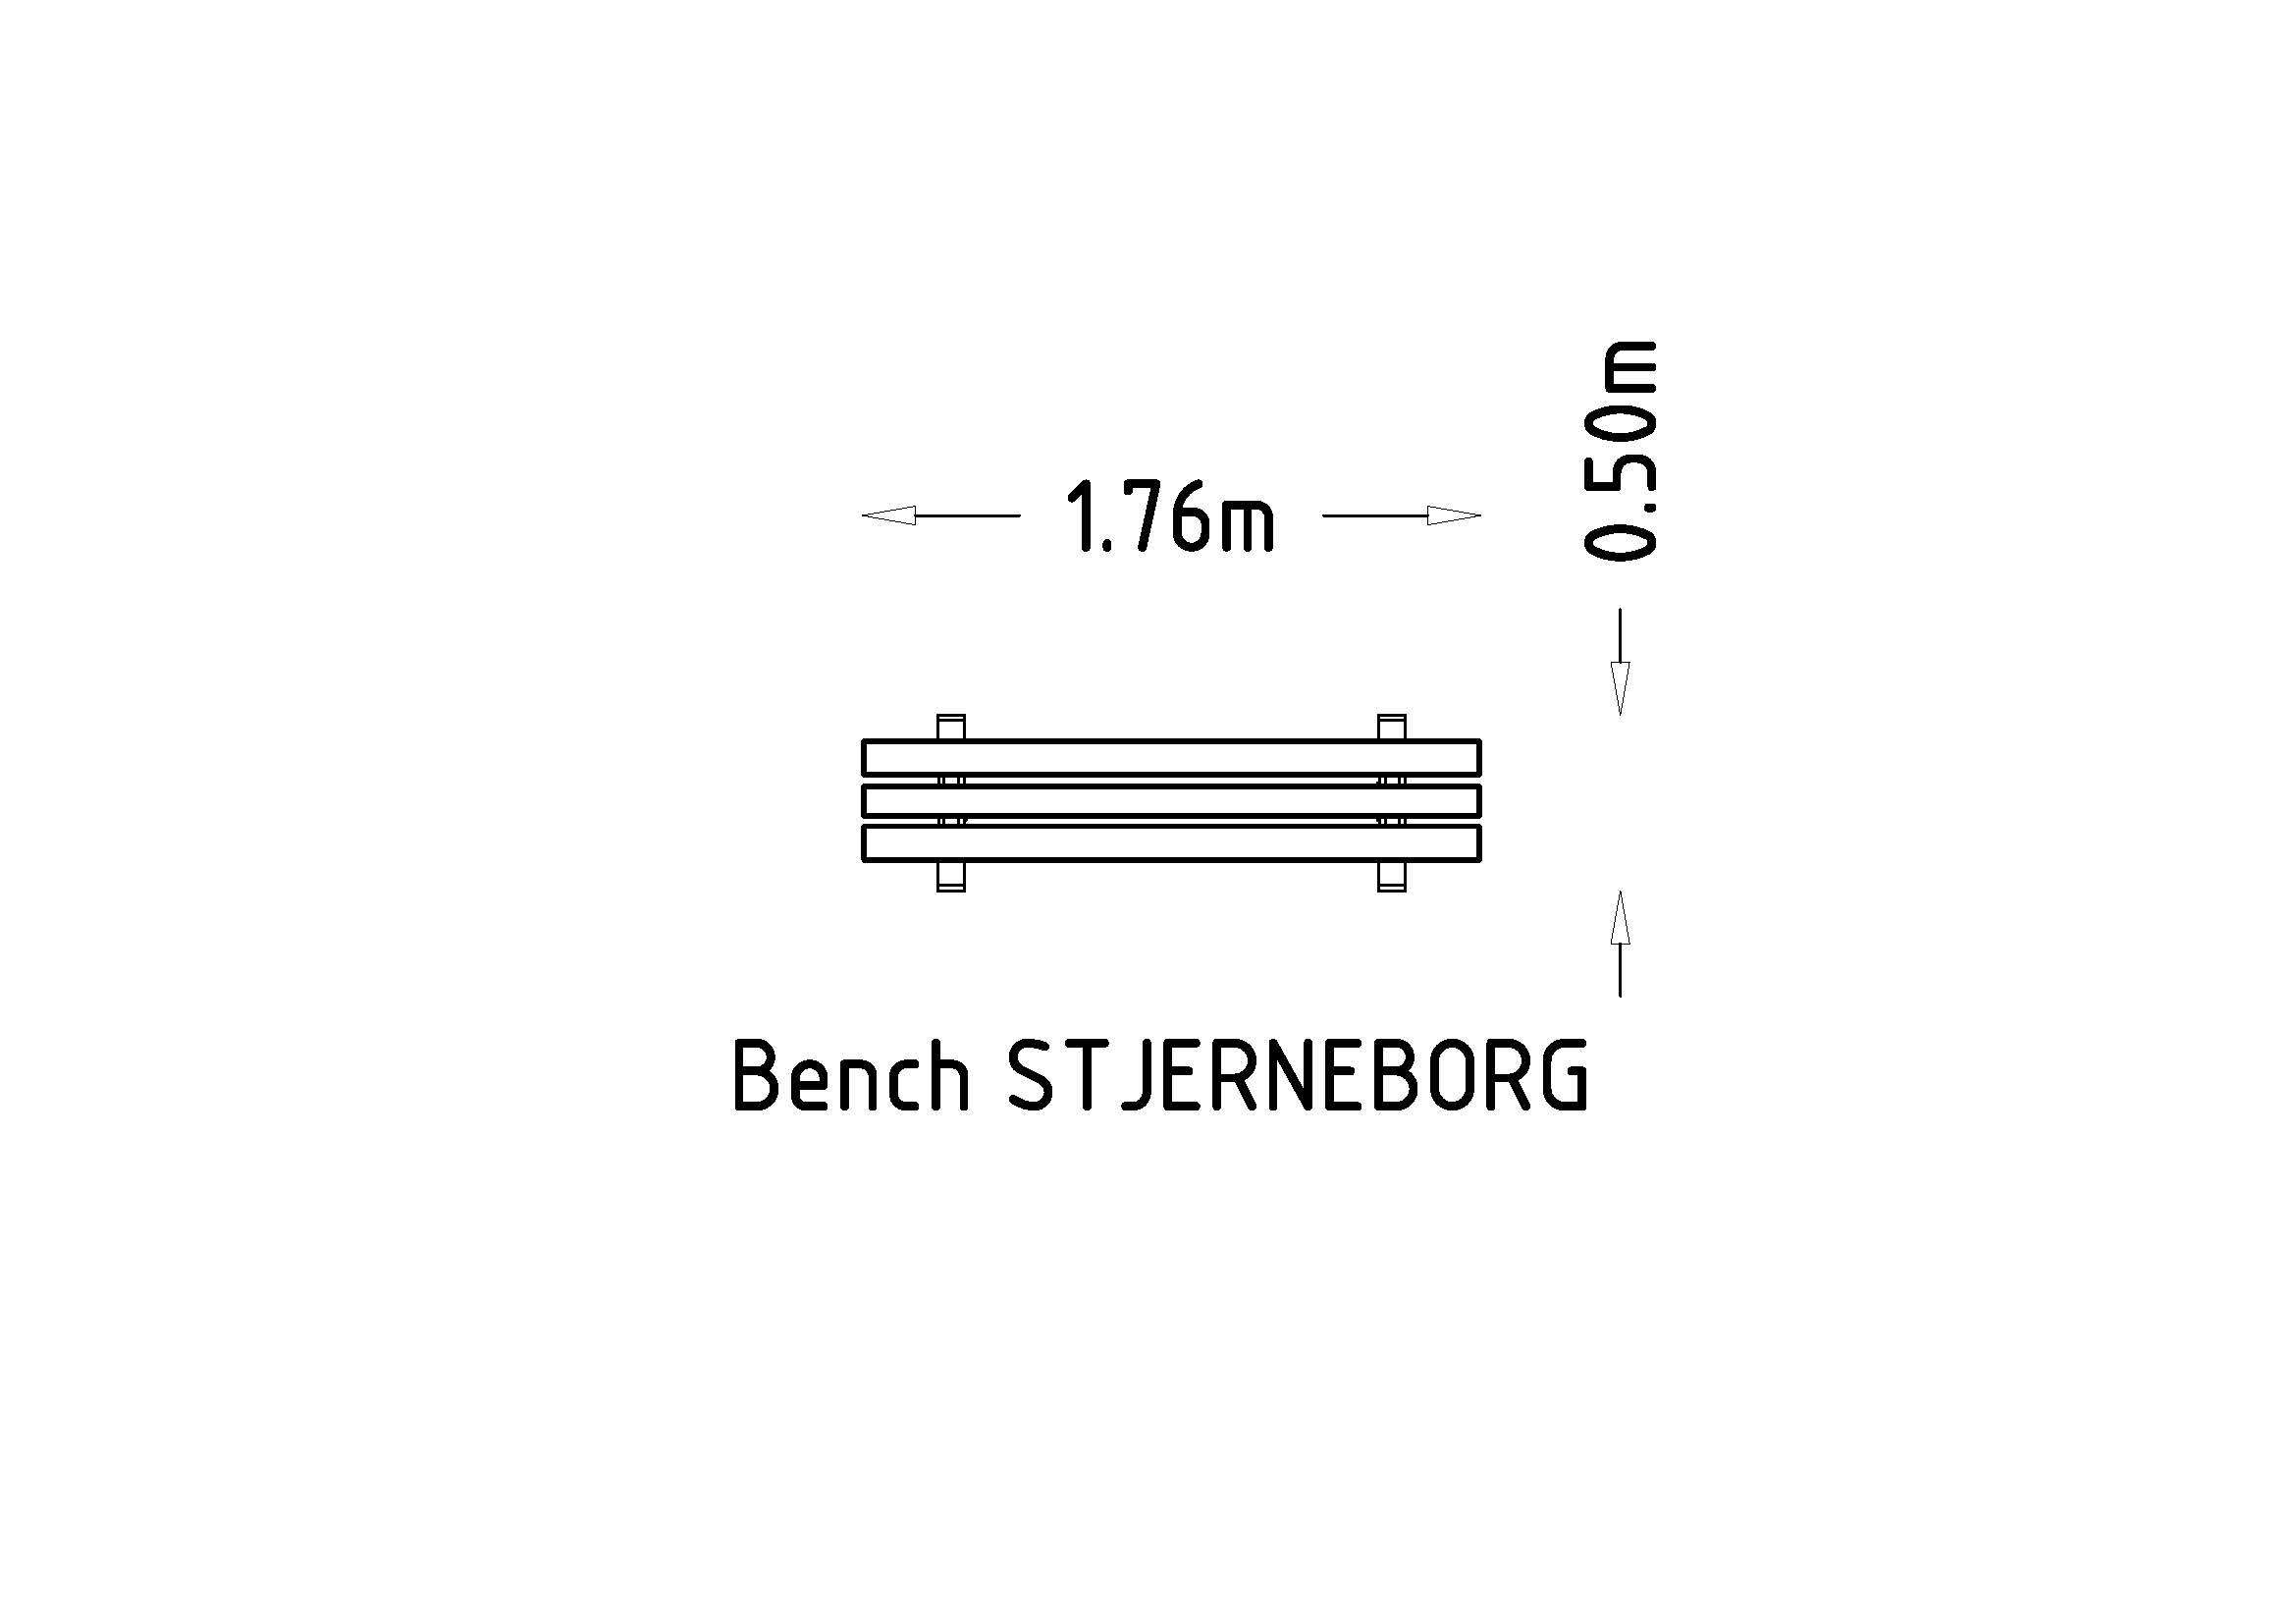 Park Bench Stjerneborg